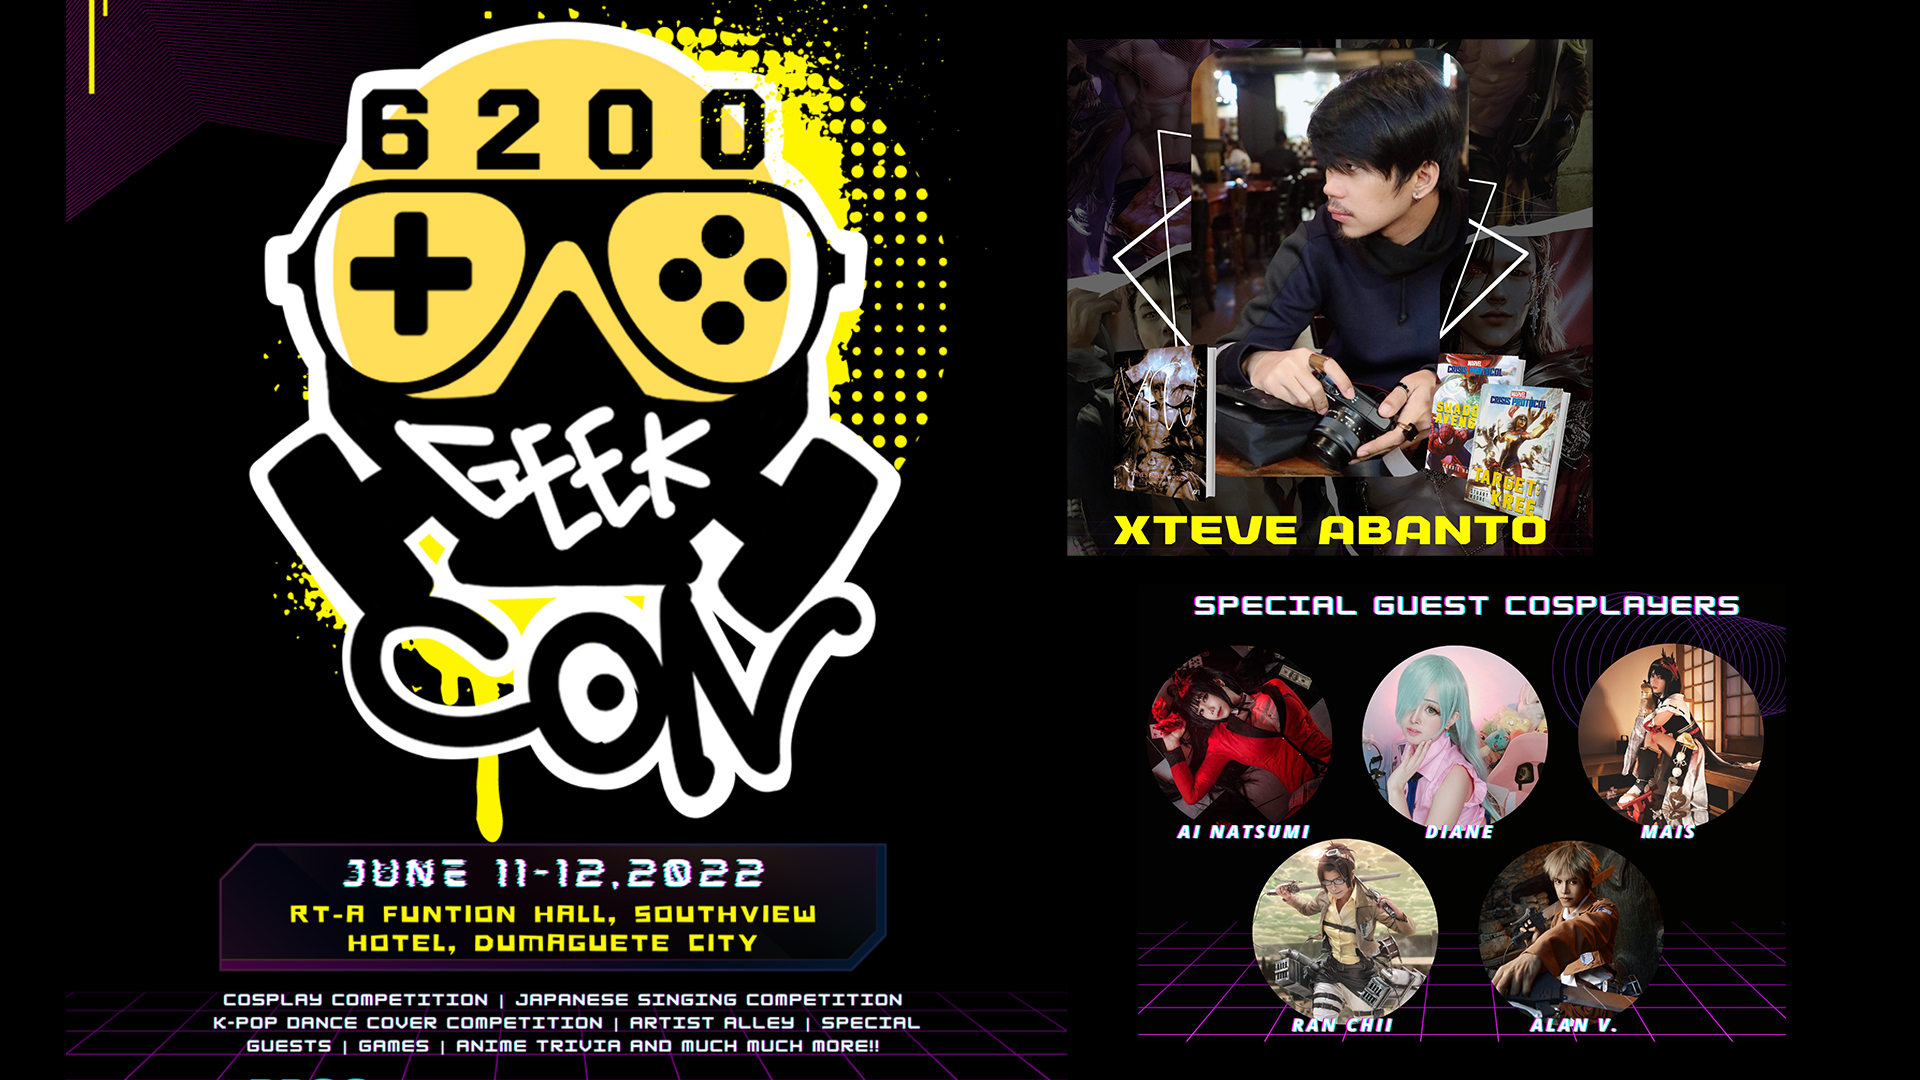 Dumaguete’s 6200 Geek Con happening on June 11-12, 2022